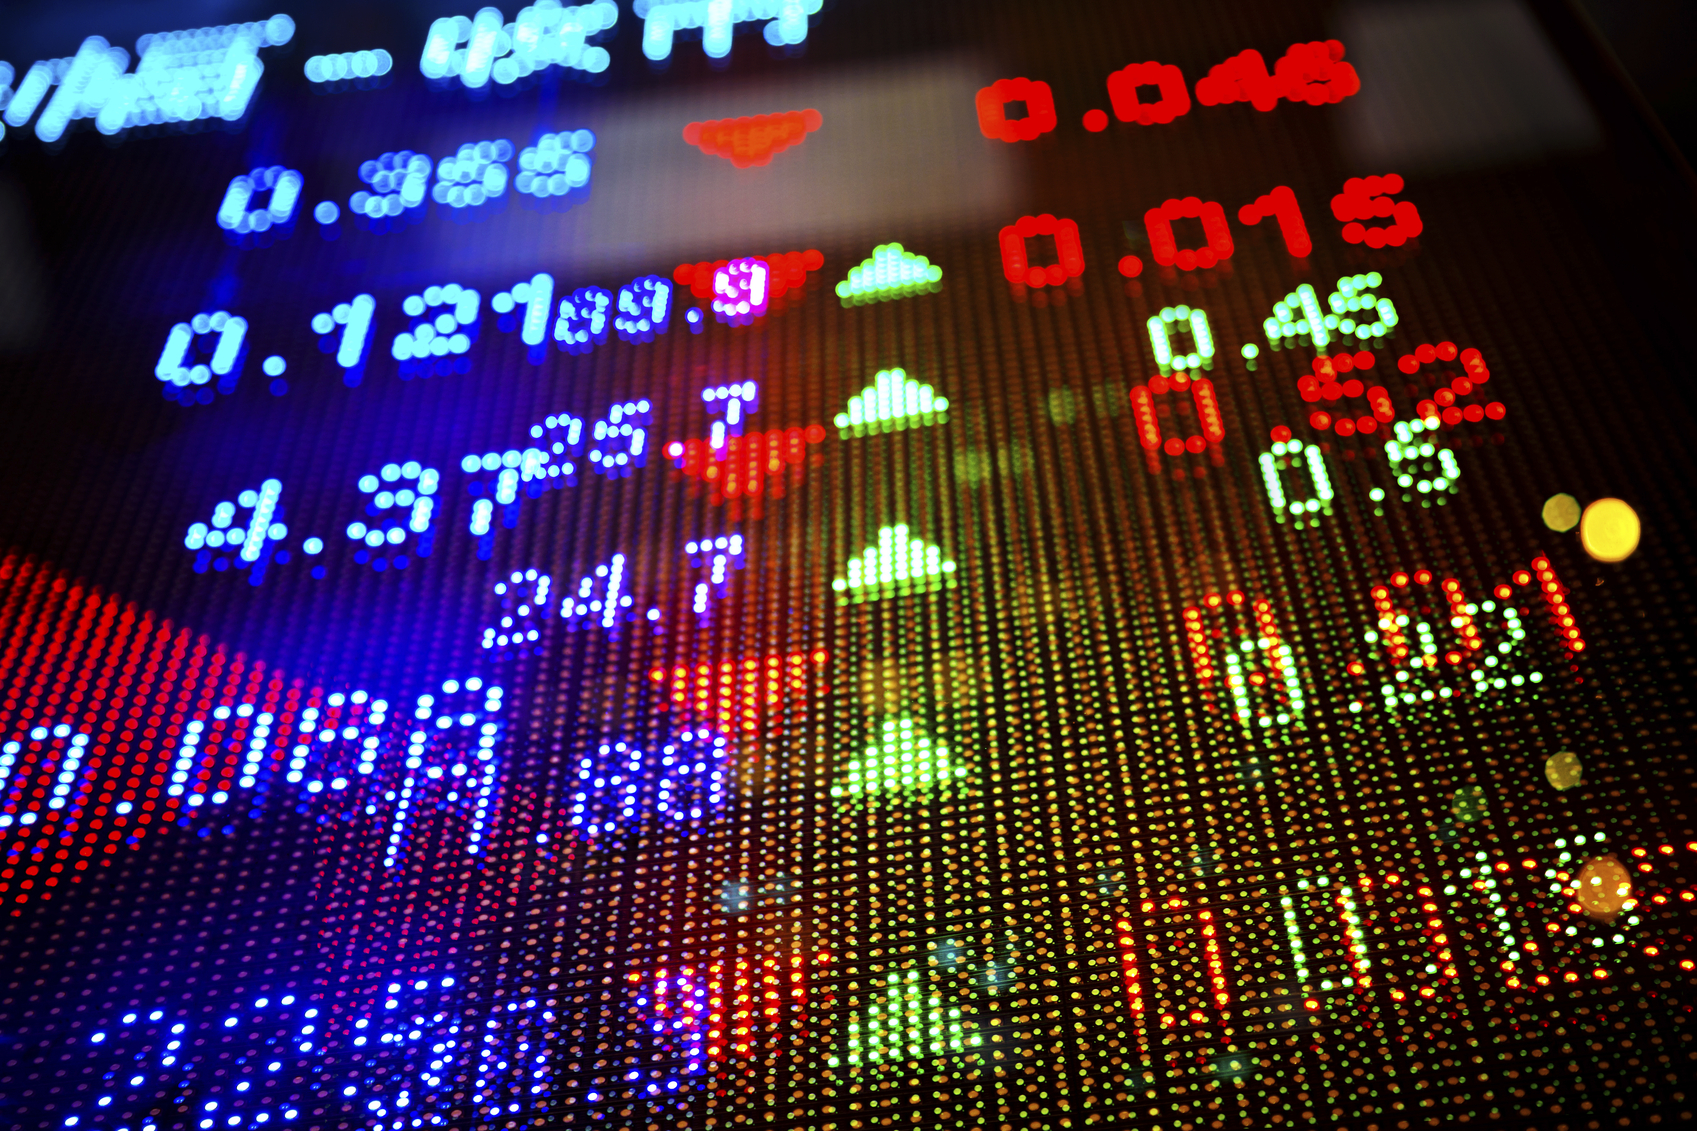 financialounge -  Global Brands Fund livello di rischio Morgan Stanley sell off volatilità